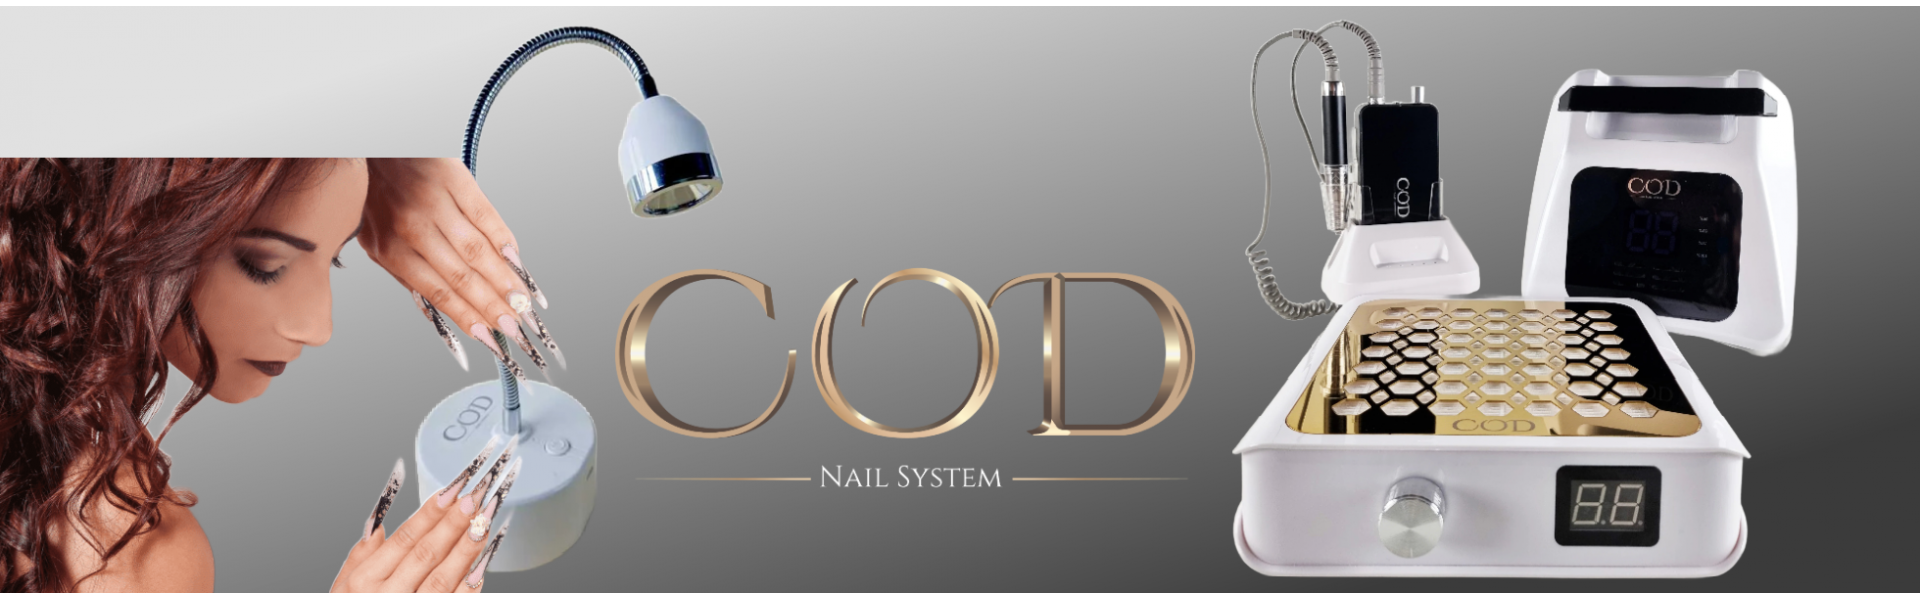 Appareils électroniques COD Nail System